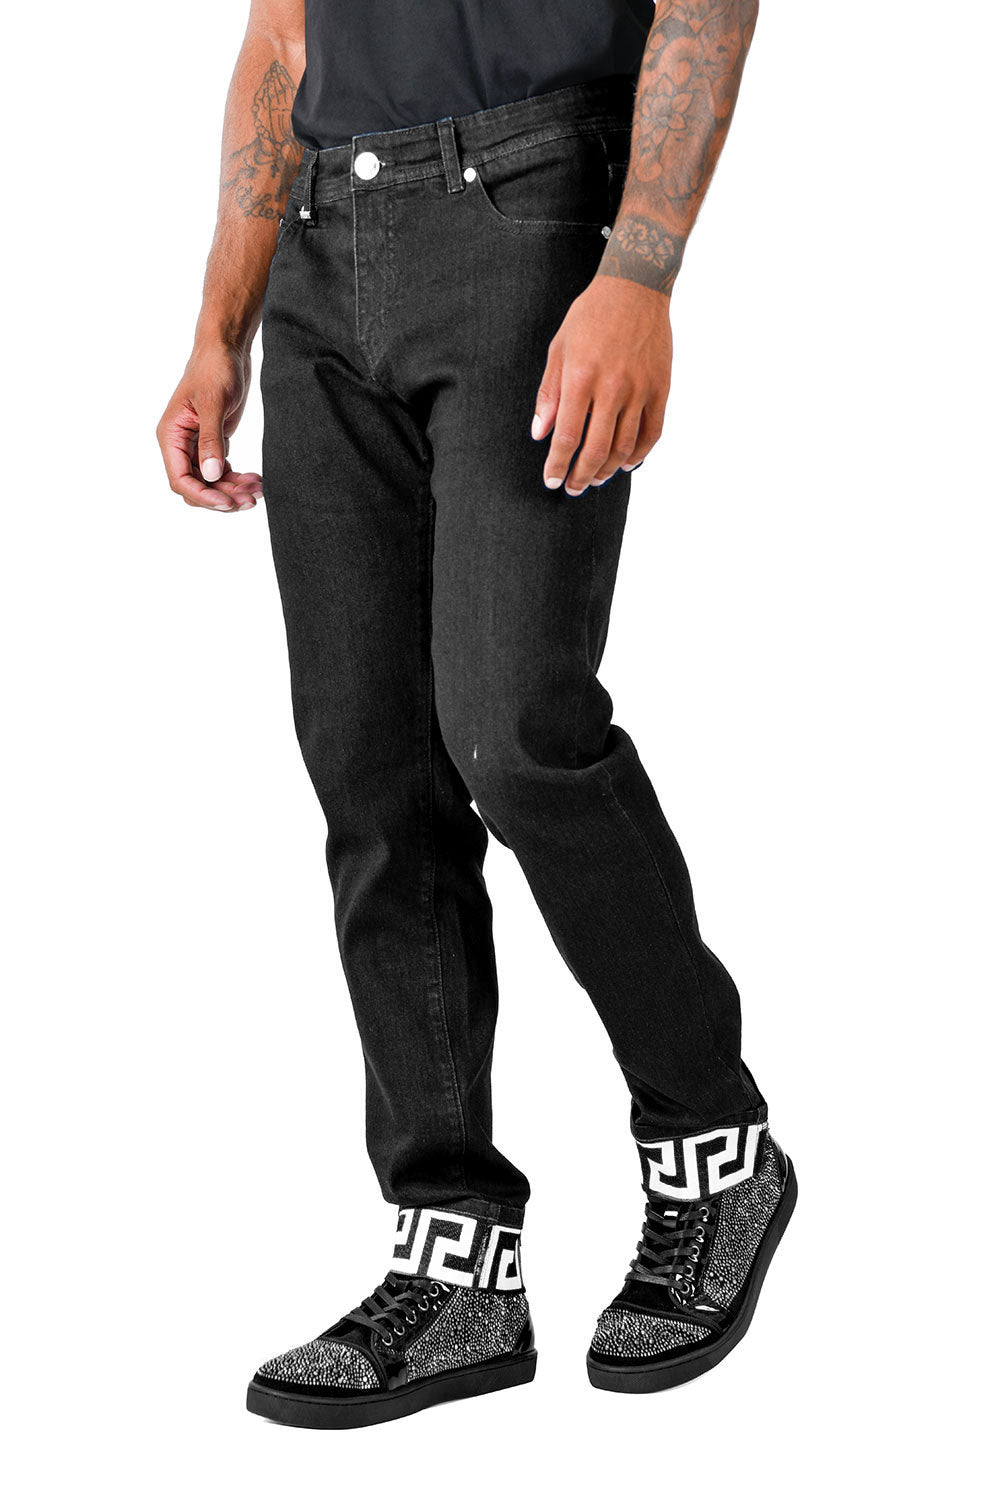 BARABAS Men's Greek Key Pattern Design Luxory Jeans SN8858 Black